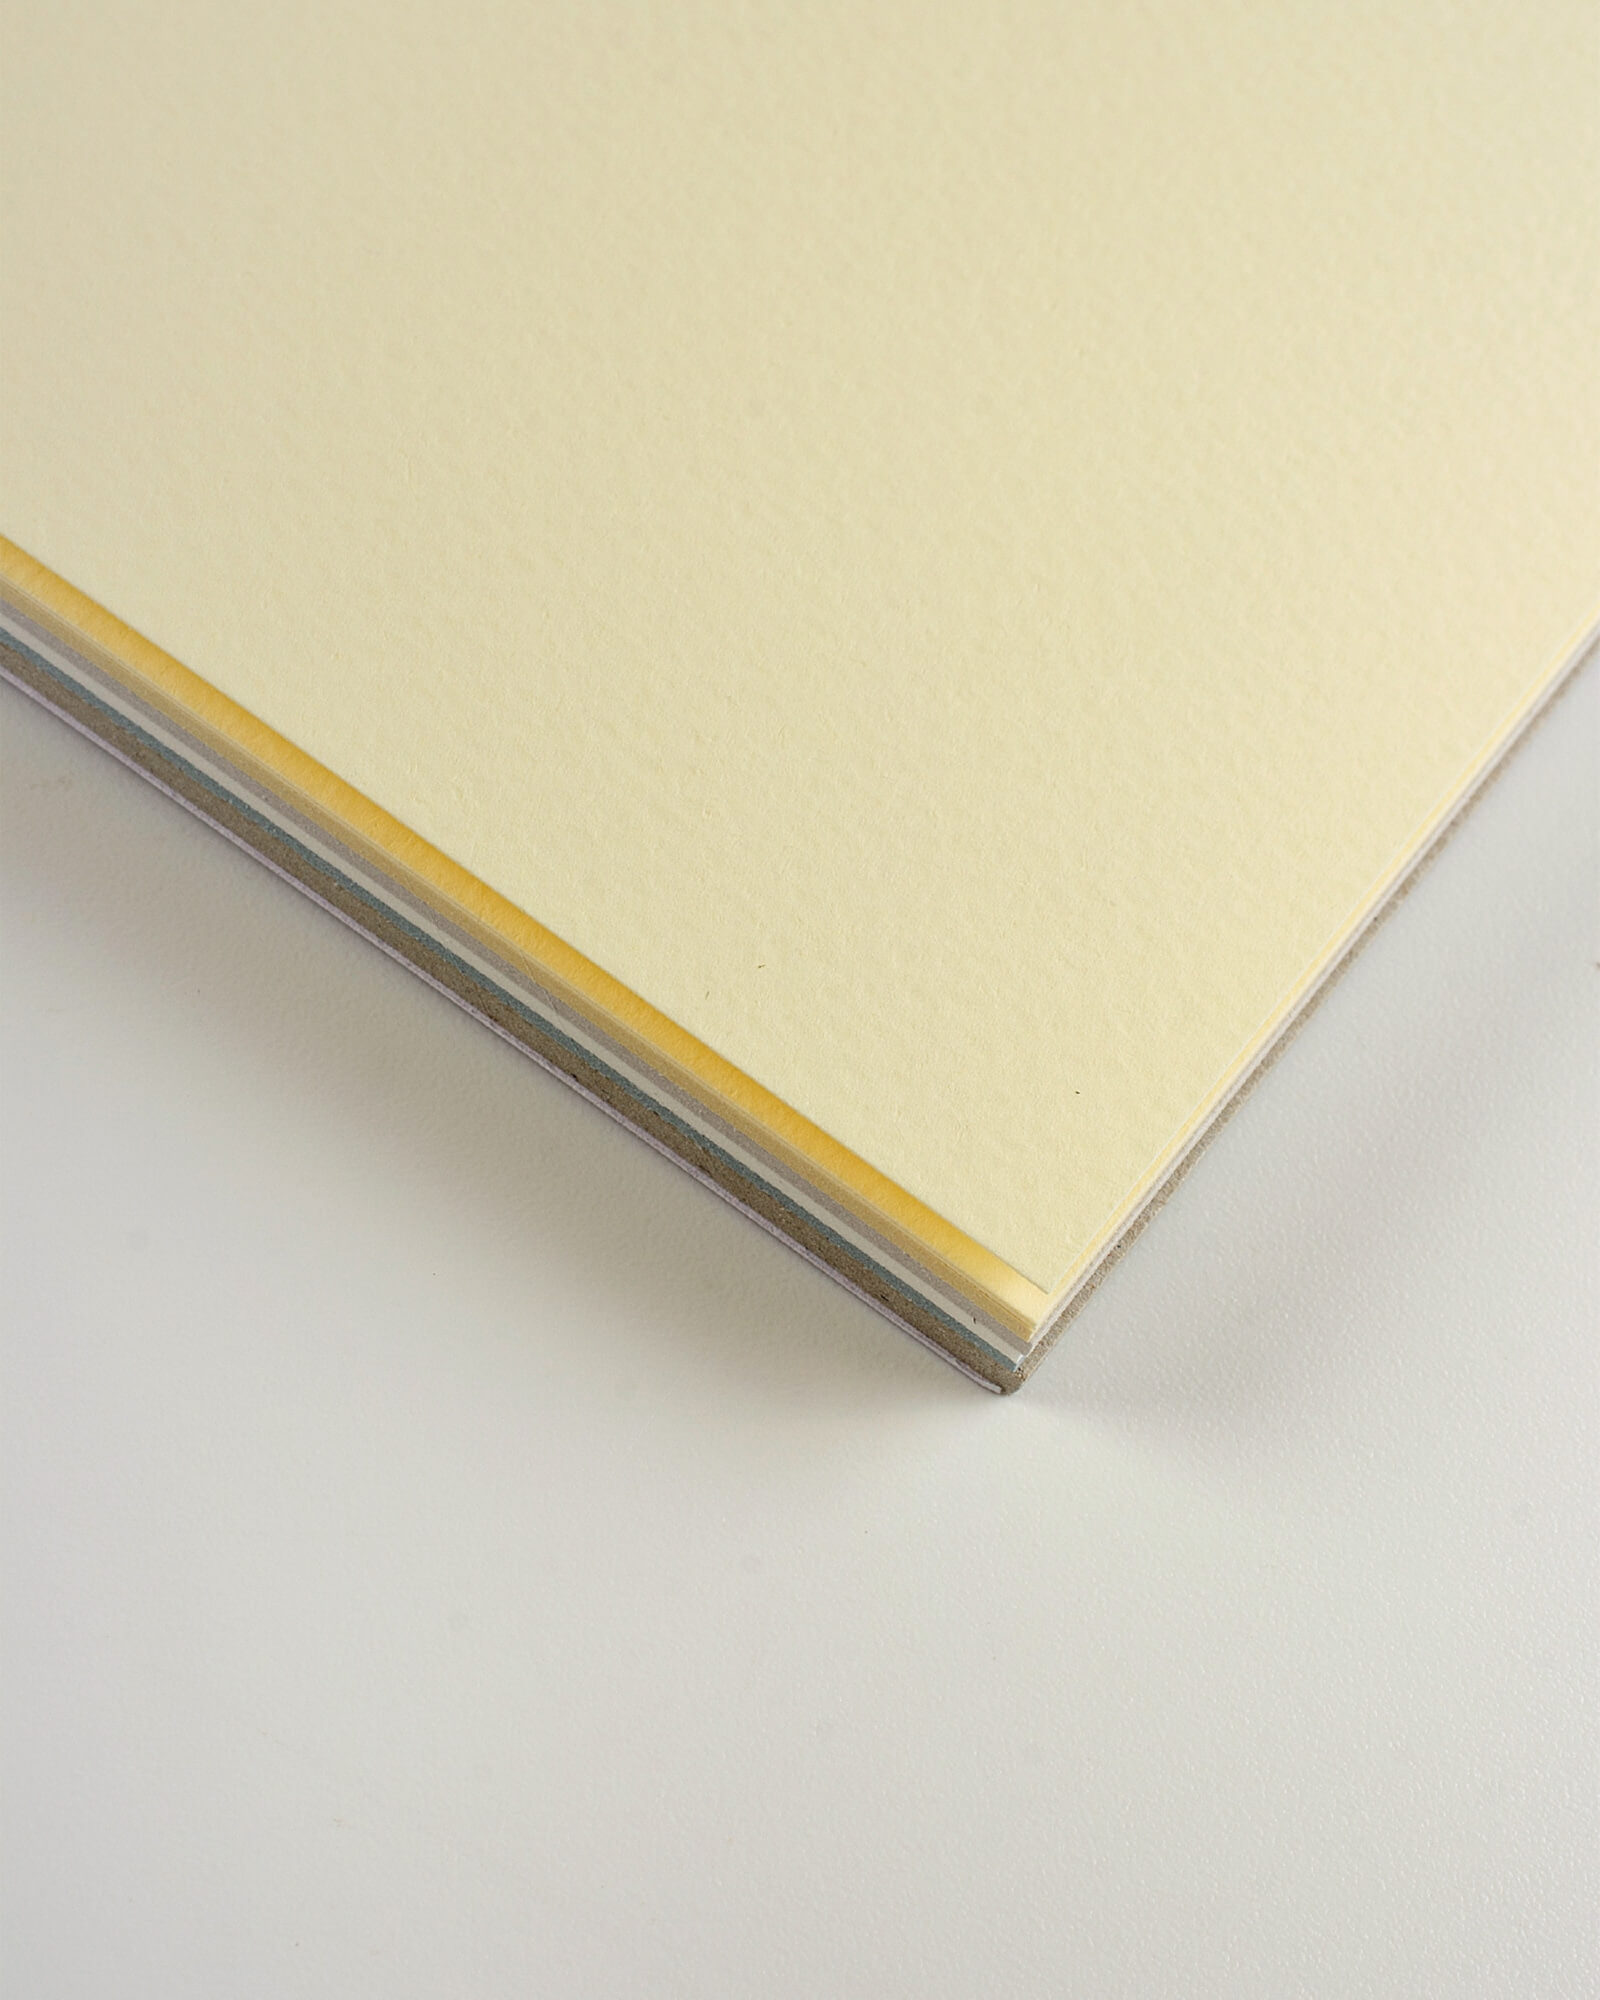 Альбом для пастели Tiziano 160г/м.кв 21x29,7см 6 цветов 30л склейка по 1 стороне